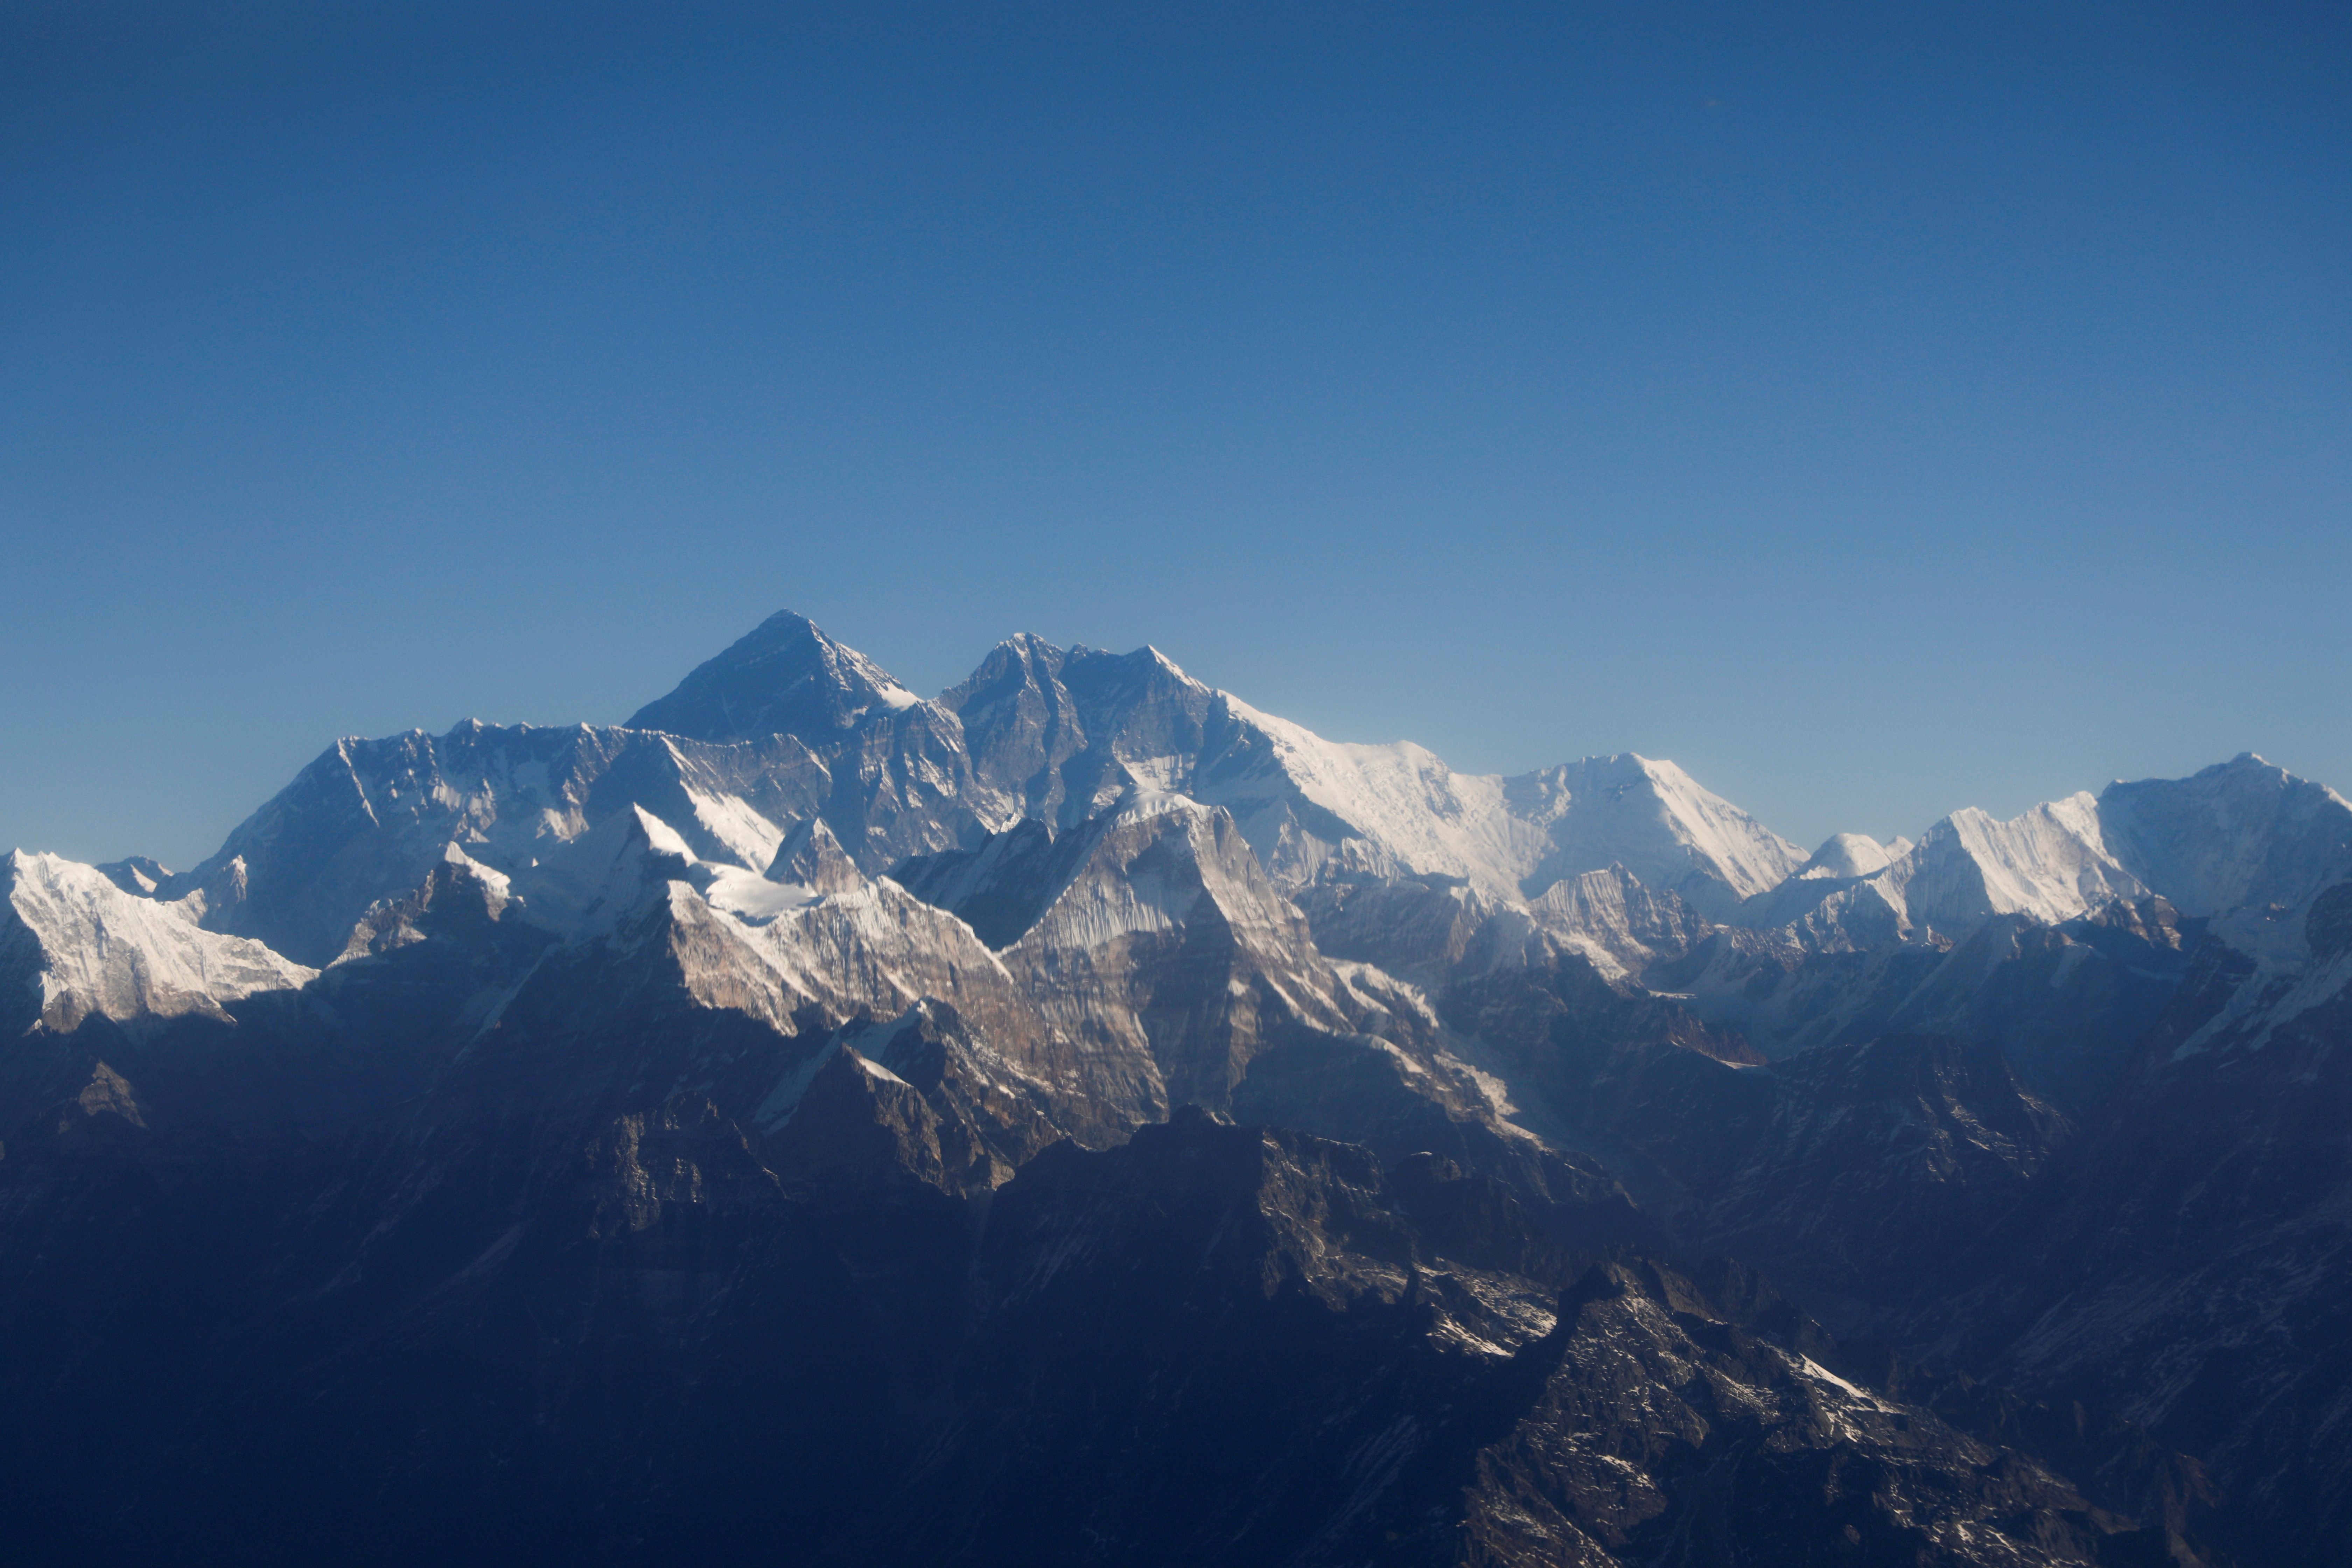 El coronavirus continúa expandiéndose, inclusive, hasta llegar al monte Everest, de 8848,86 metros de altura. REUTERS/Monika Deupala/File Photo